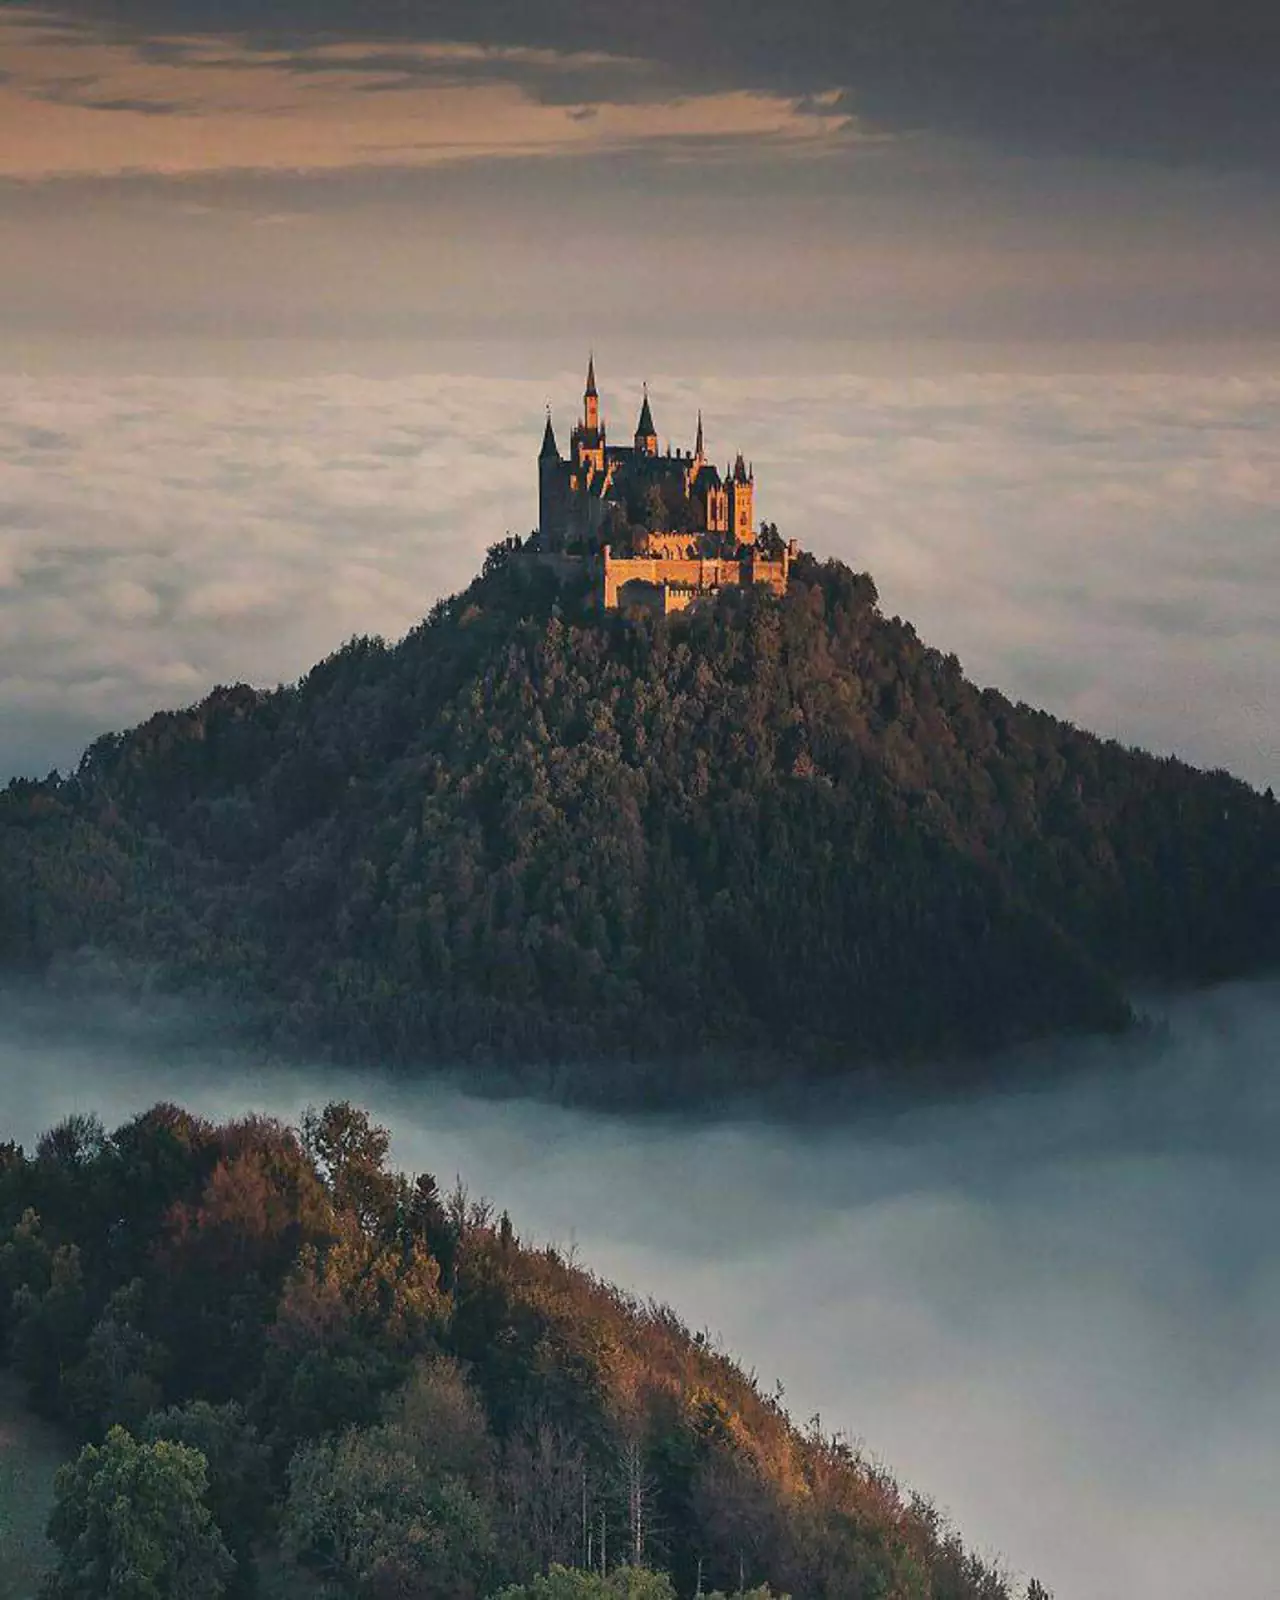 Ещё один немецкий замок, словно из сказки.